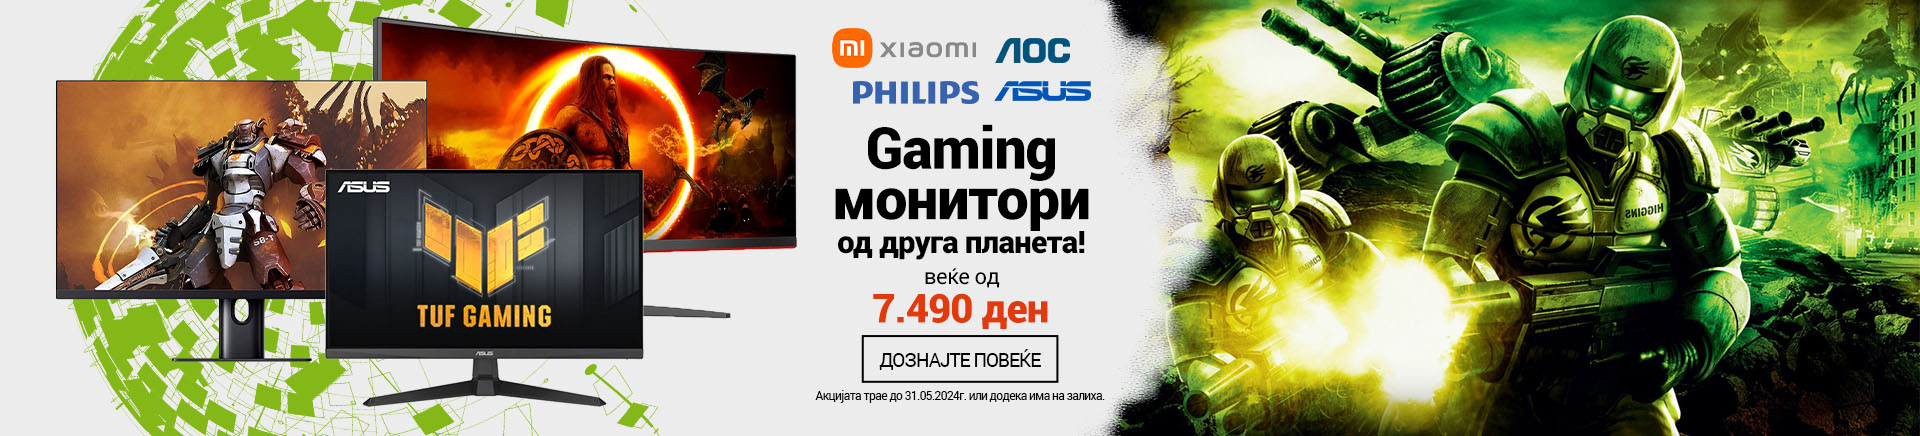 MK Gaming Monitori vec od MOBILE za APP 760x872.jpg